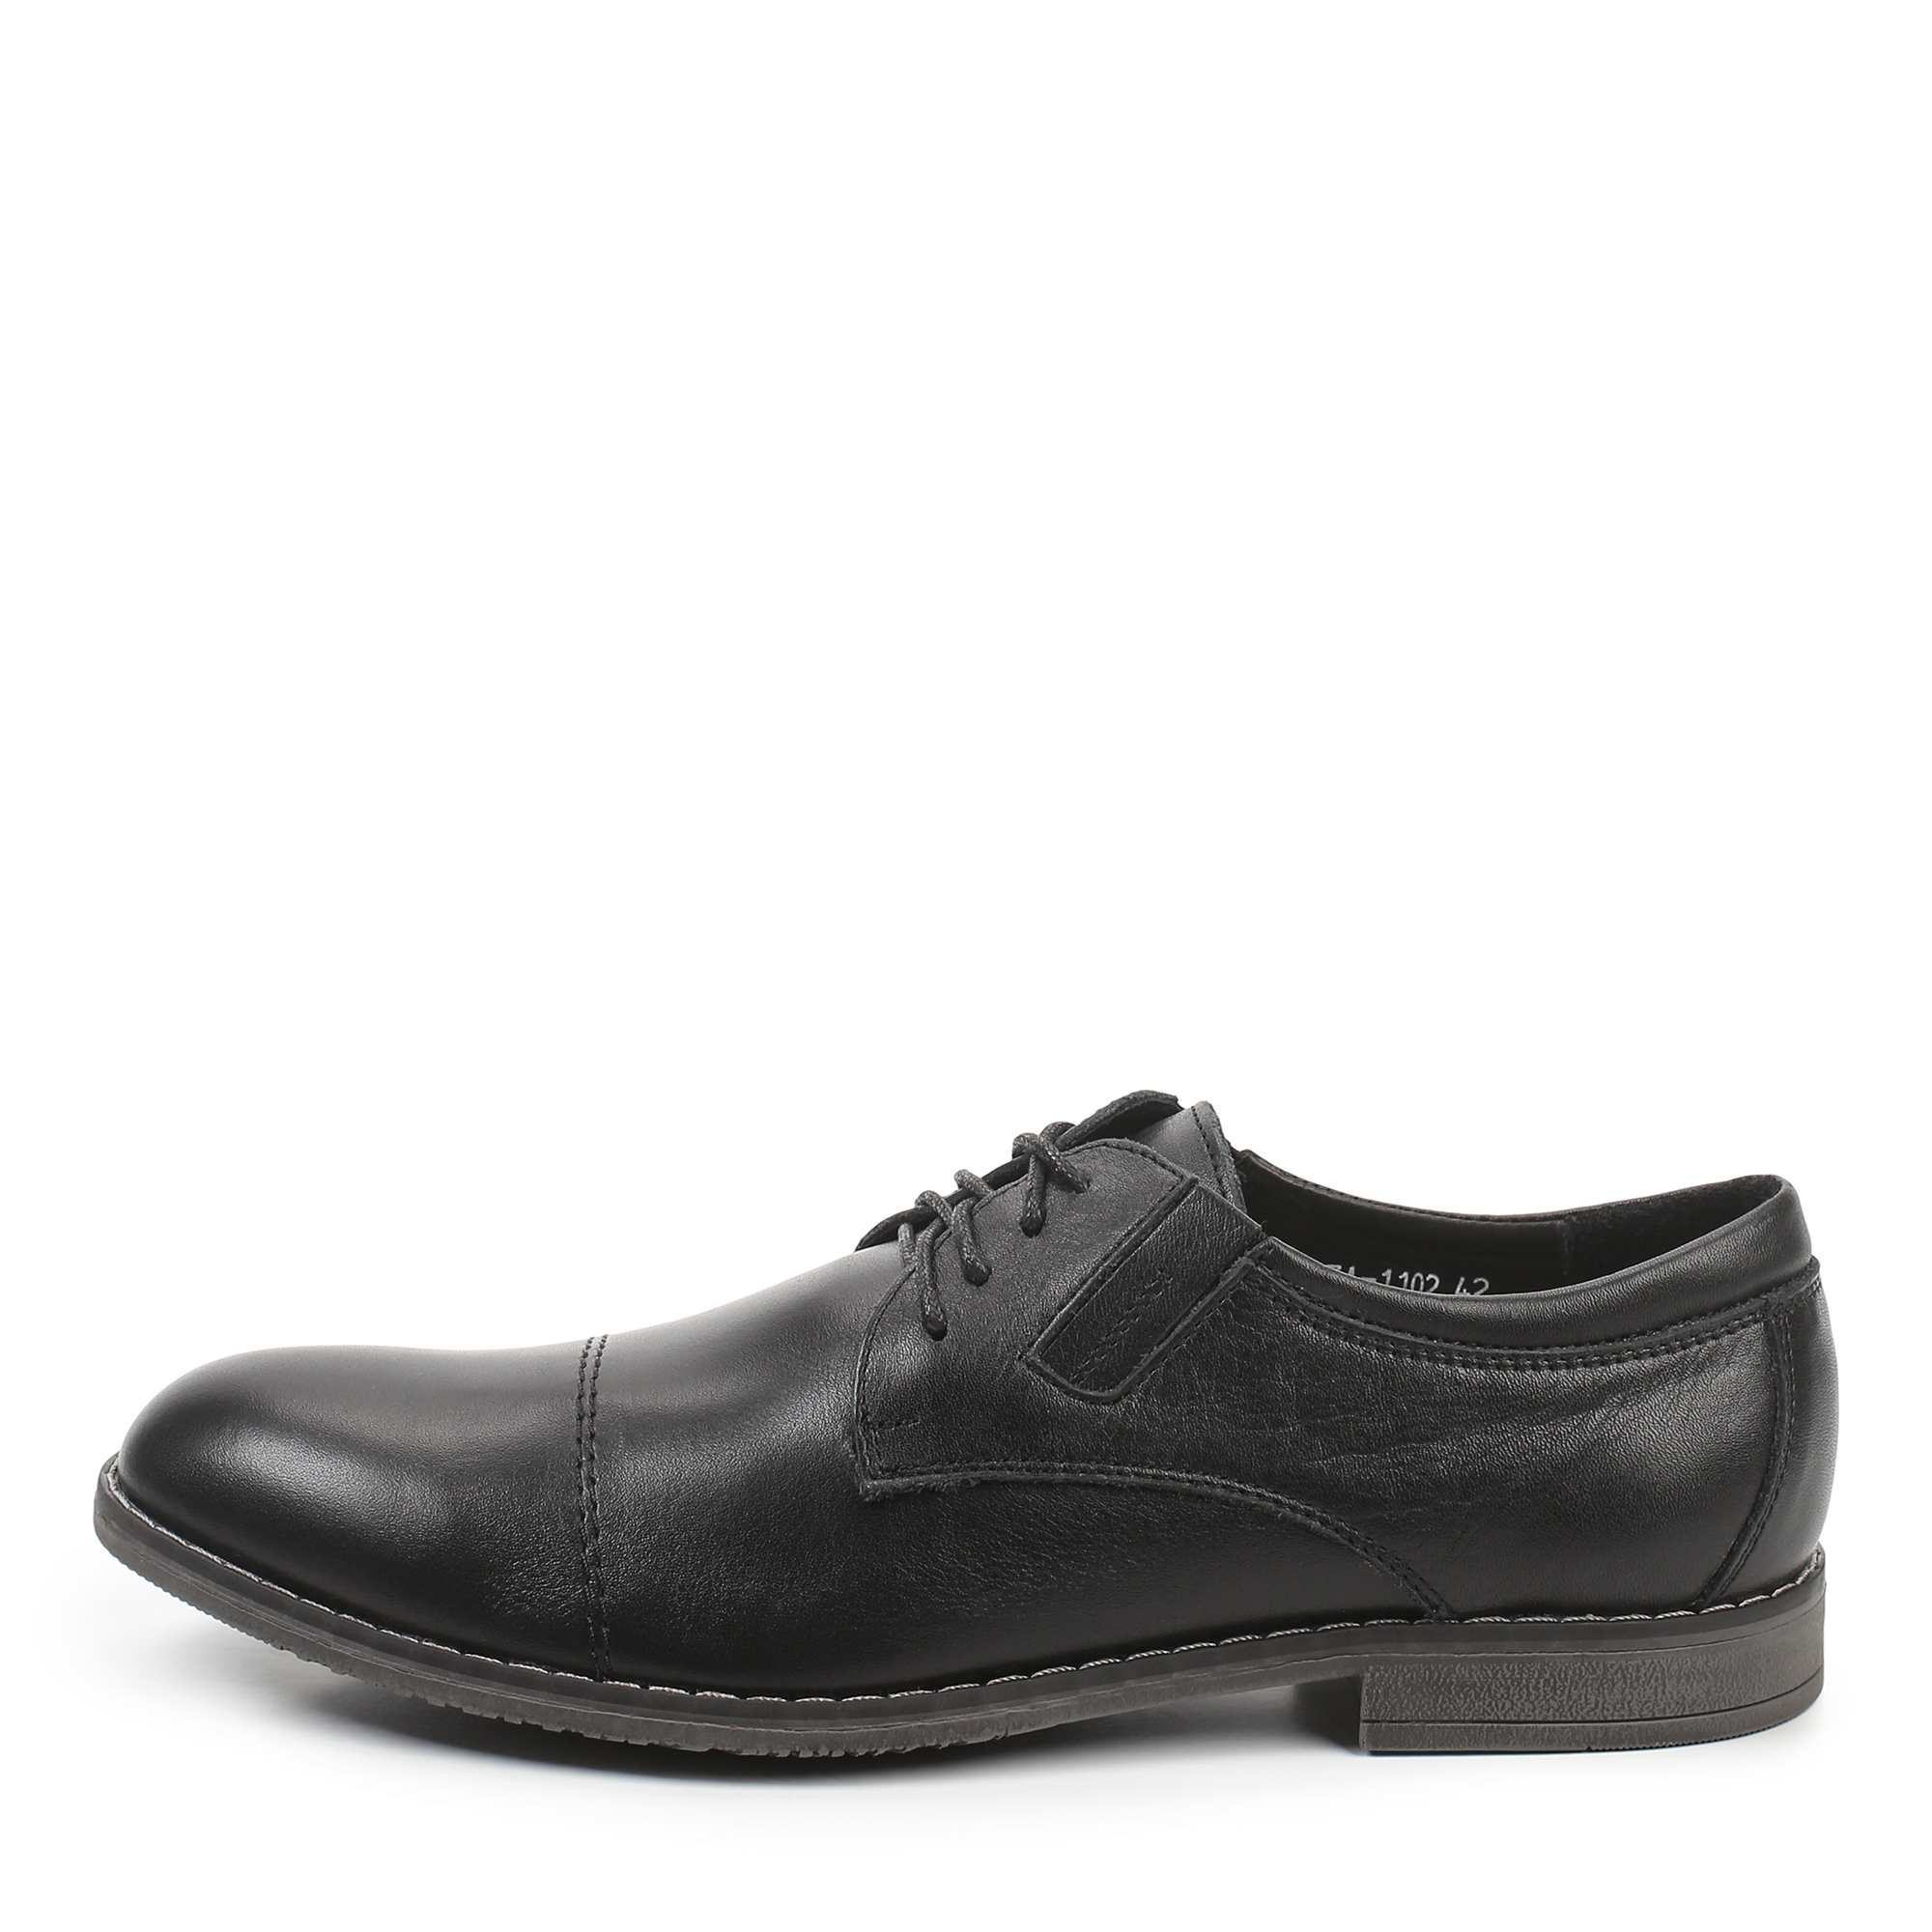 Туфли/полуботинки Thomas Munz 335-127A-1102, цвет черный, размер 41 - фото 1